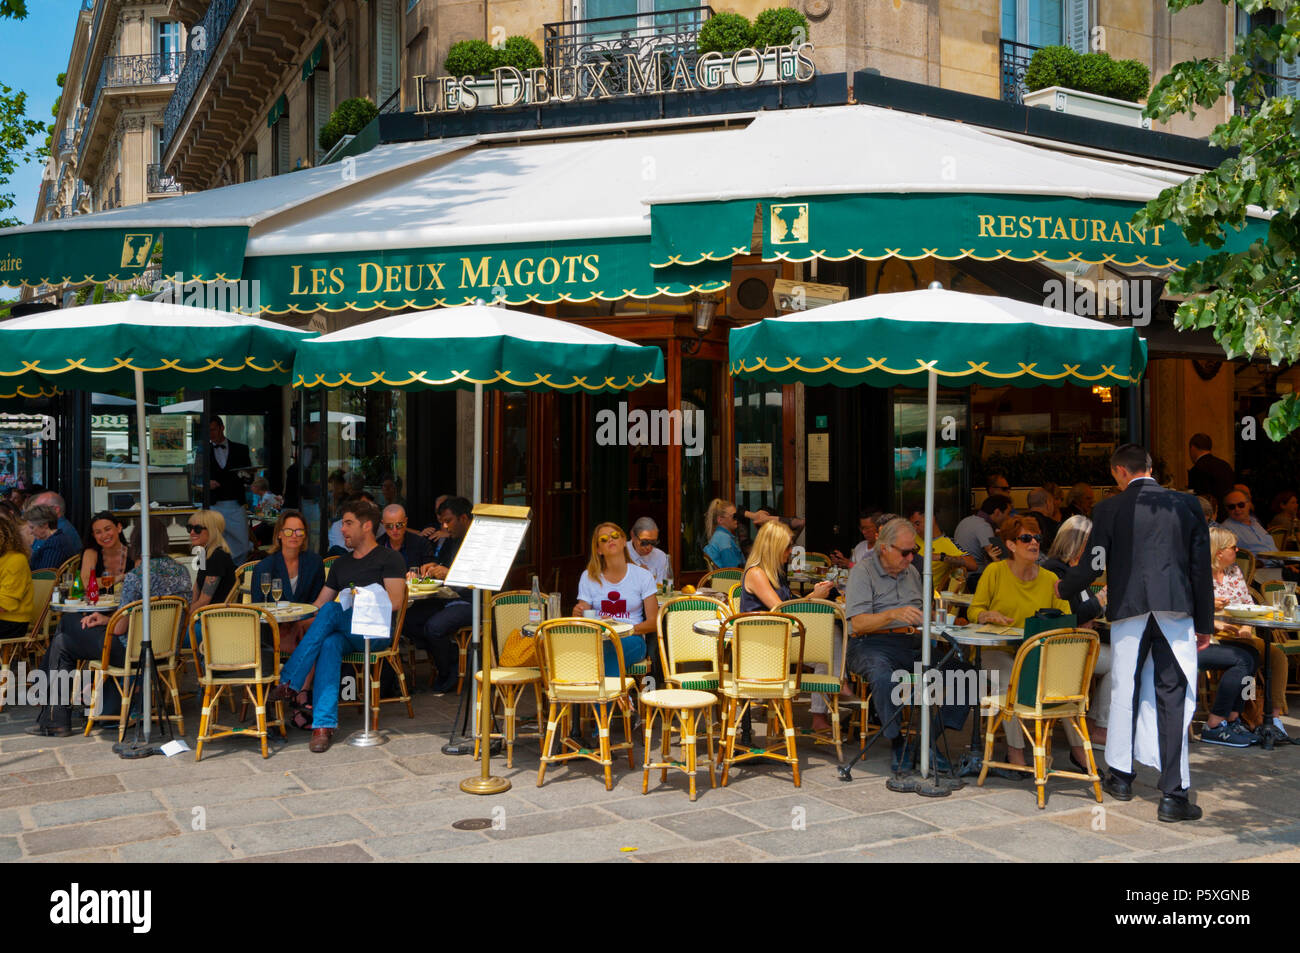 Restaurant cafe Les Deux Magots, St Germain des Pres, Left Bank, Paris, France Stock Photo